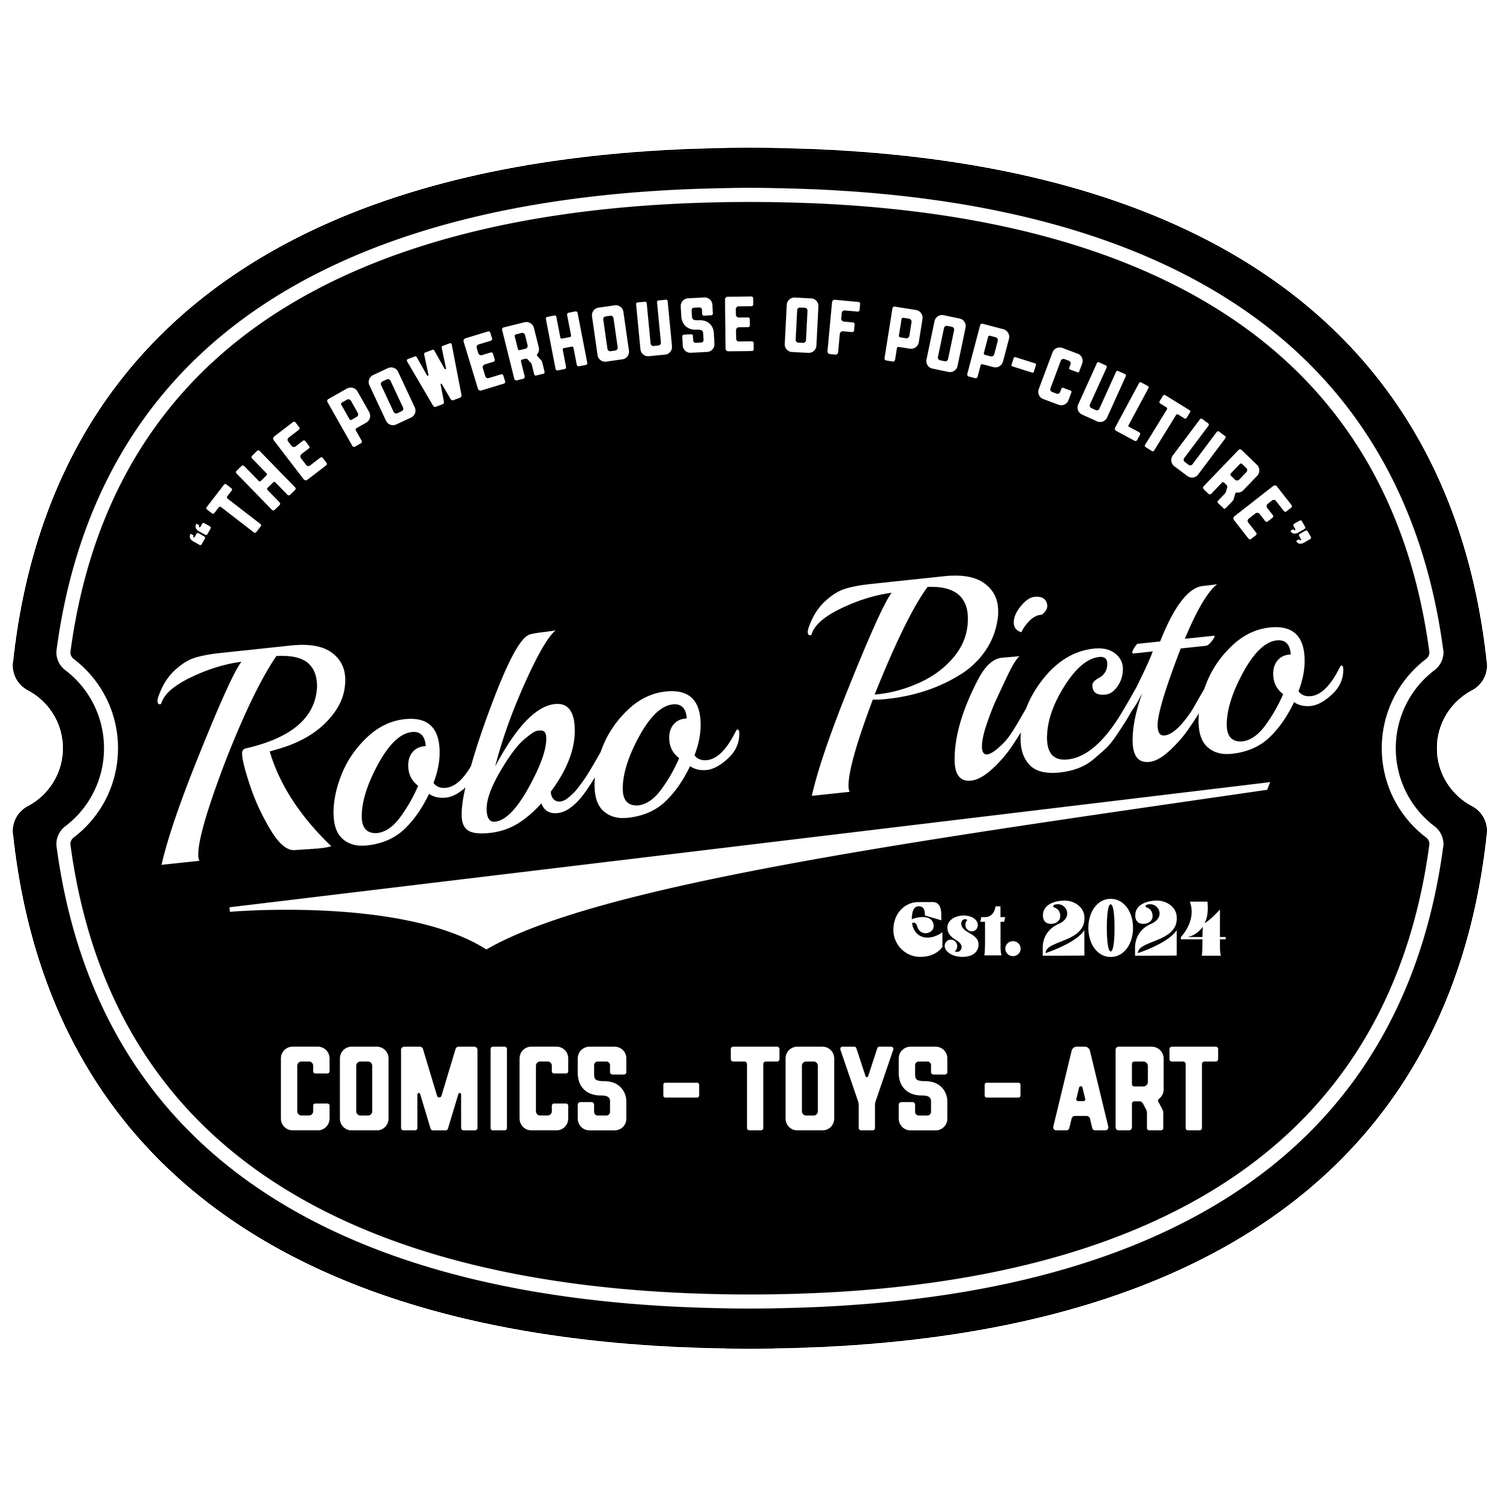 ROBO PICTO COMICS